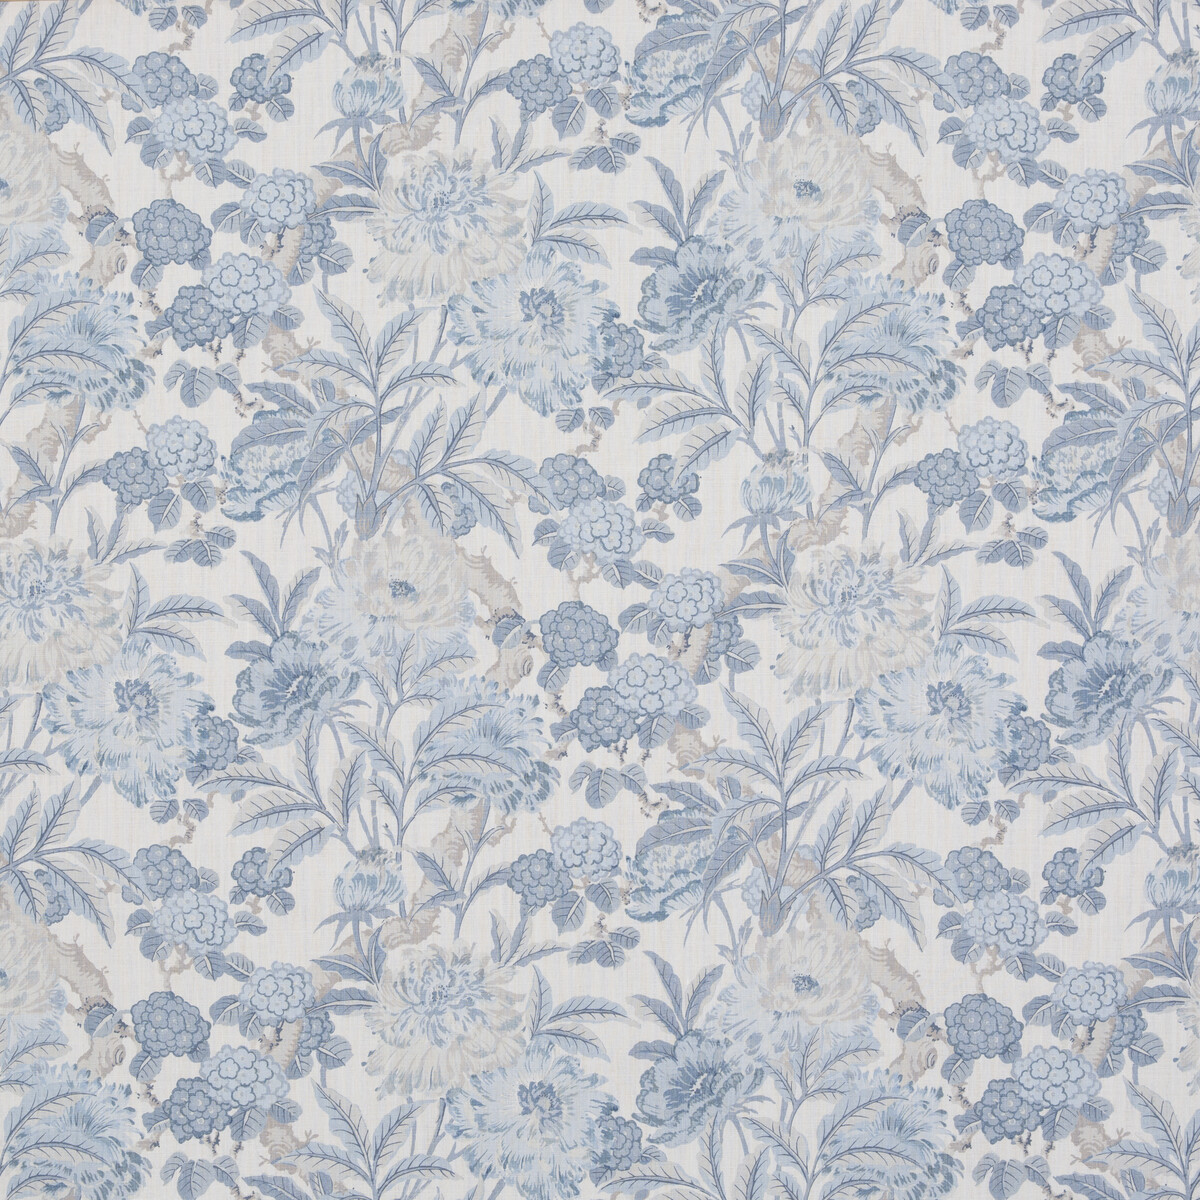 G P & J Baker Bp10950.1.0 Summer Peony Multipurpose Fabric in Blue/White/Brown